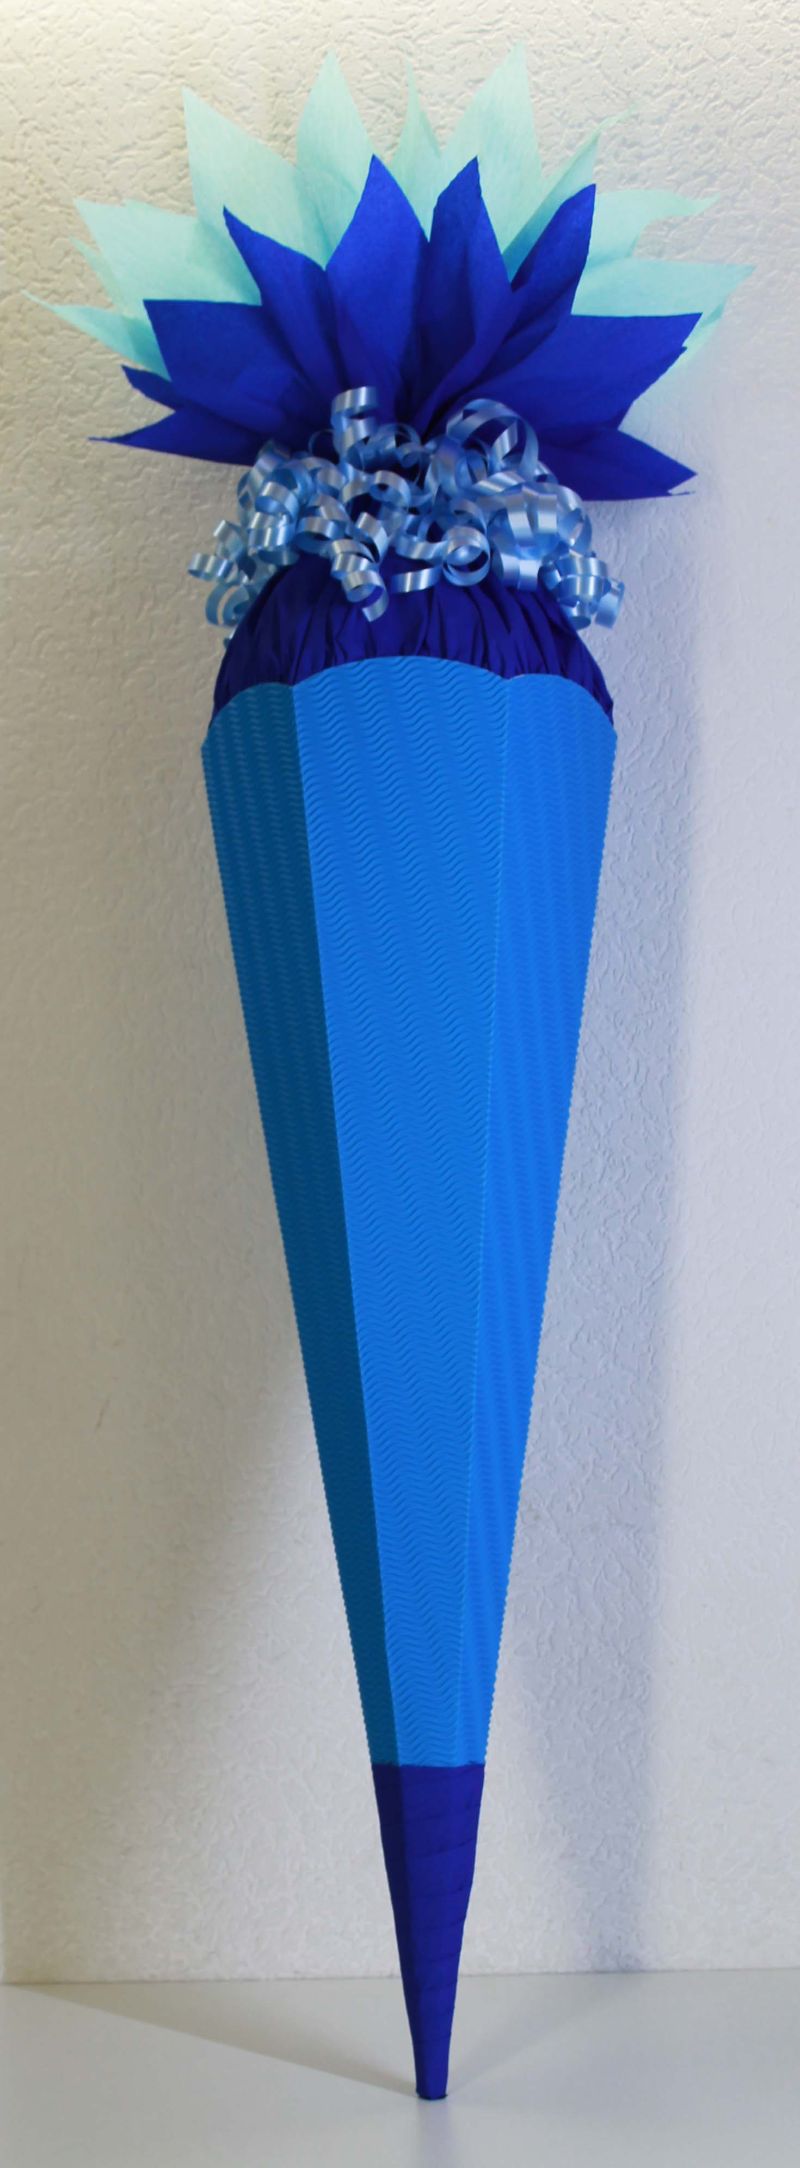 Schultüte Zuckertüte Rohling zum selbst verzieren Rohling 70 75 80 85 90  100 cm / 1m für Jungs HANDARBEIT blau königblau hellblau dunkelblau türkis